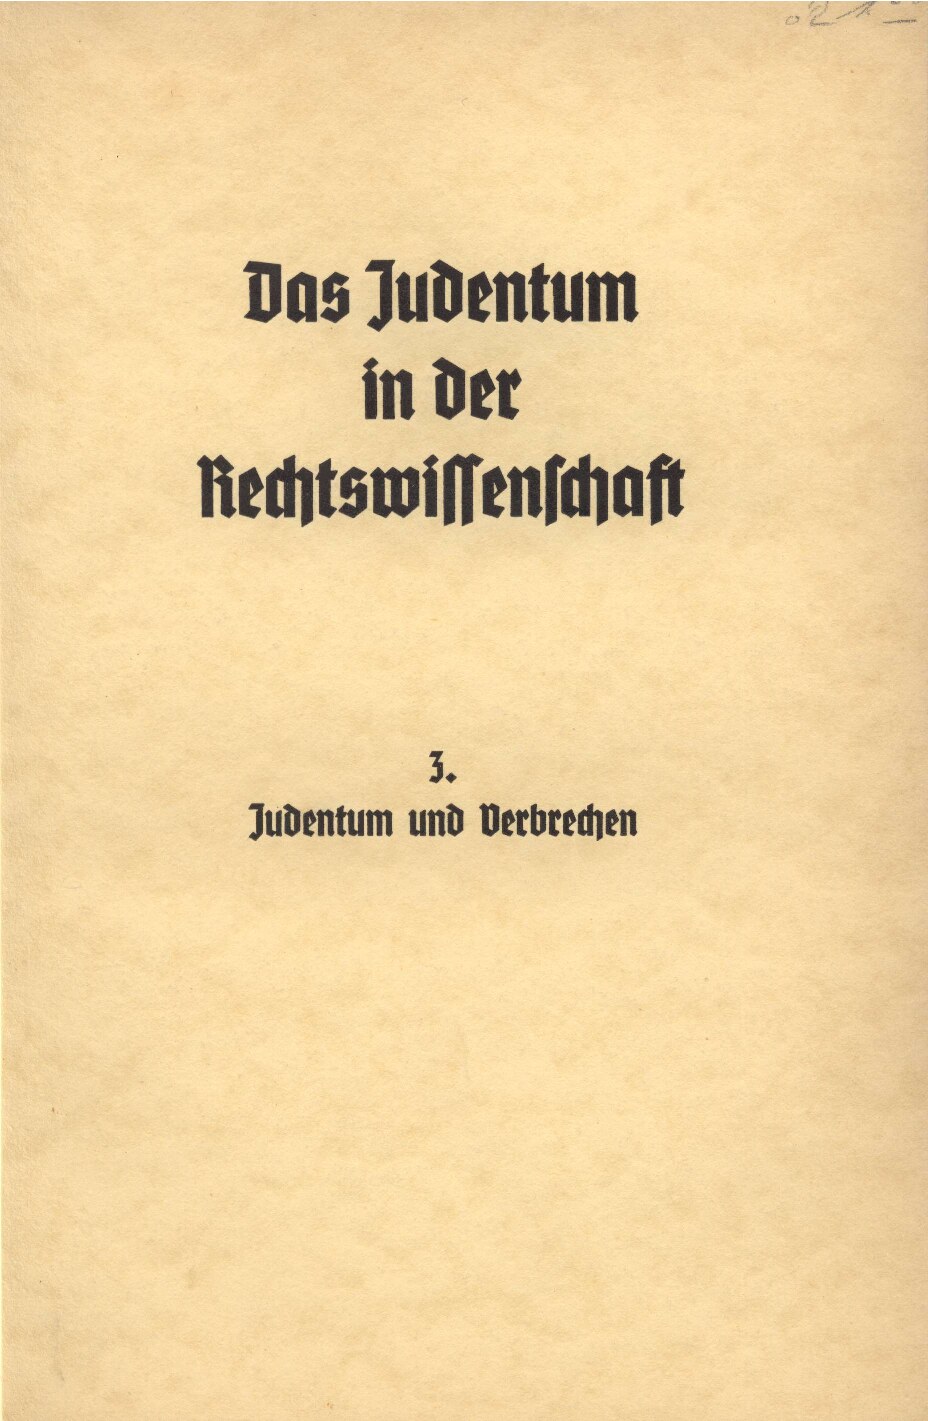 Das Judentum in der Rechtswissenschaft - 3. - Judentum und Verbrechen (1936, 90 S., Scan, Fraktur)